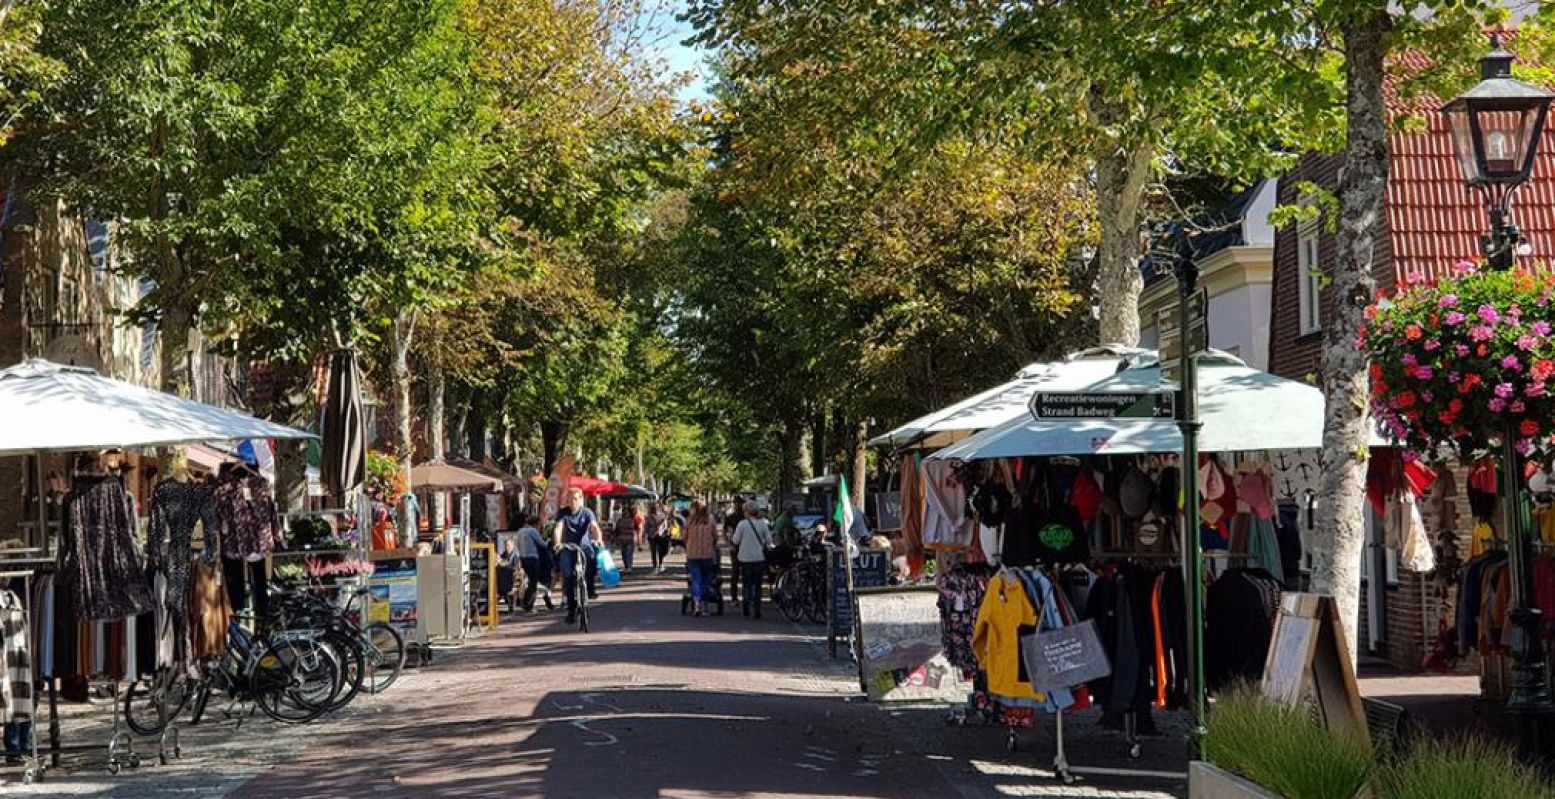 Shoppen en terrasjes bezoeken in de Dorpsstraat van Oost-Vlieland, het enige dorp op Vlieland. Foto: DagjeWeg.NL © Tonny van Oosten